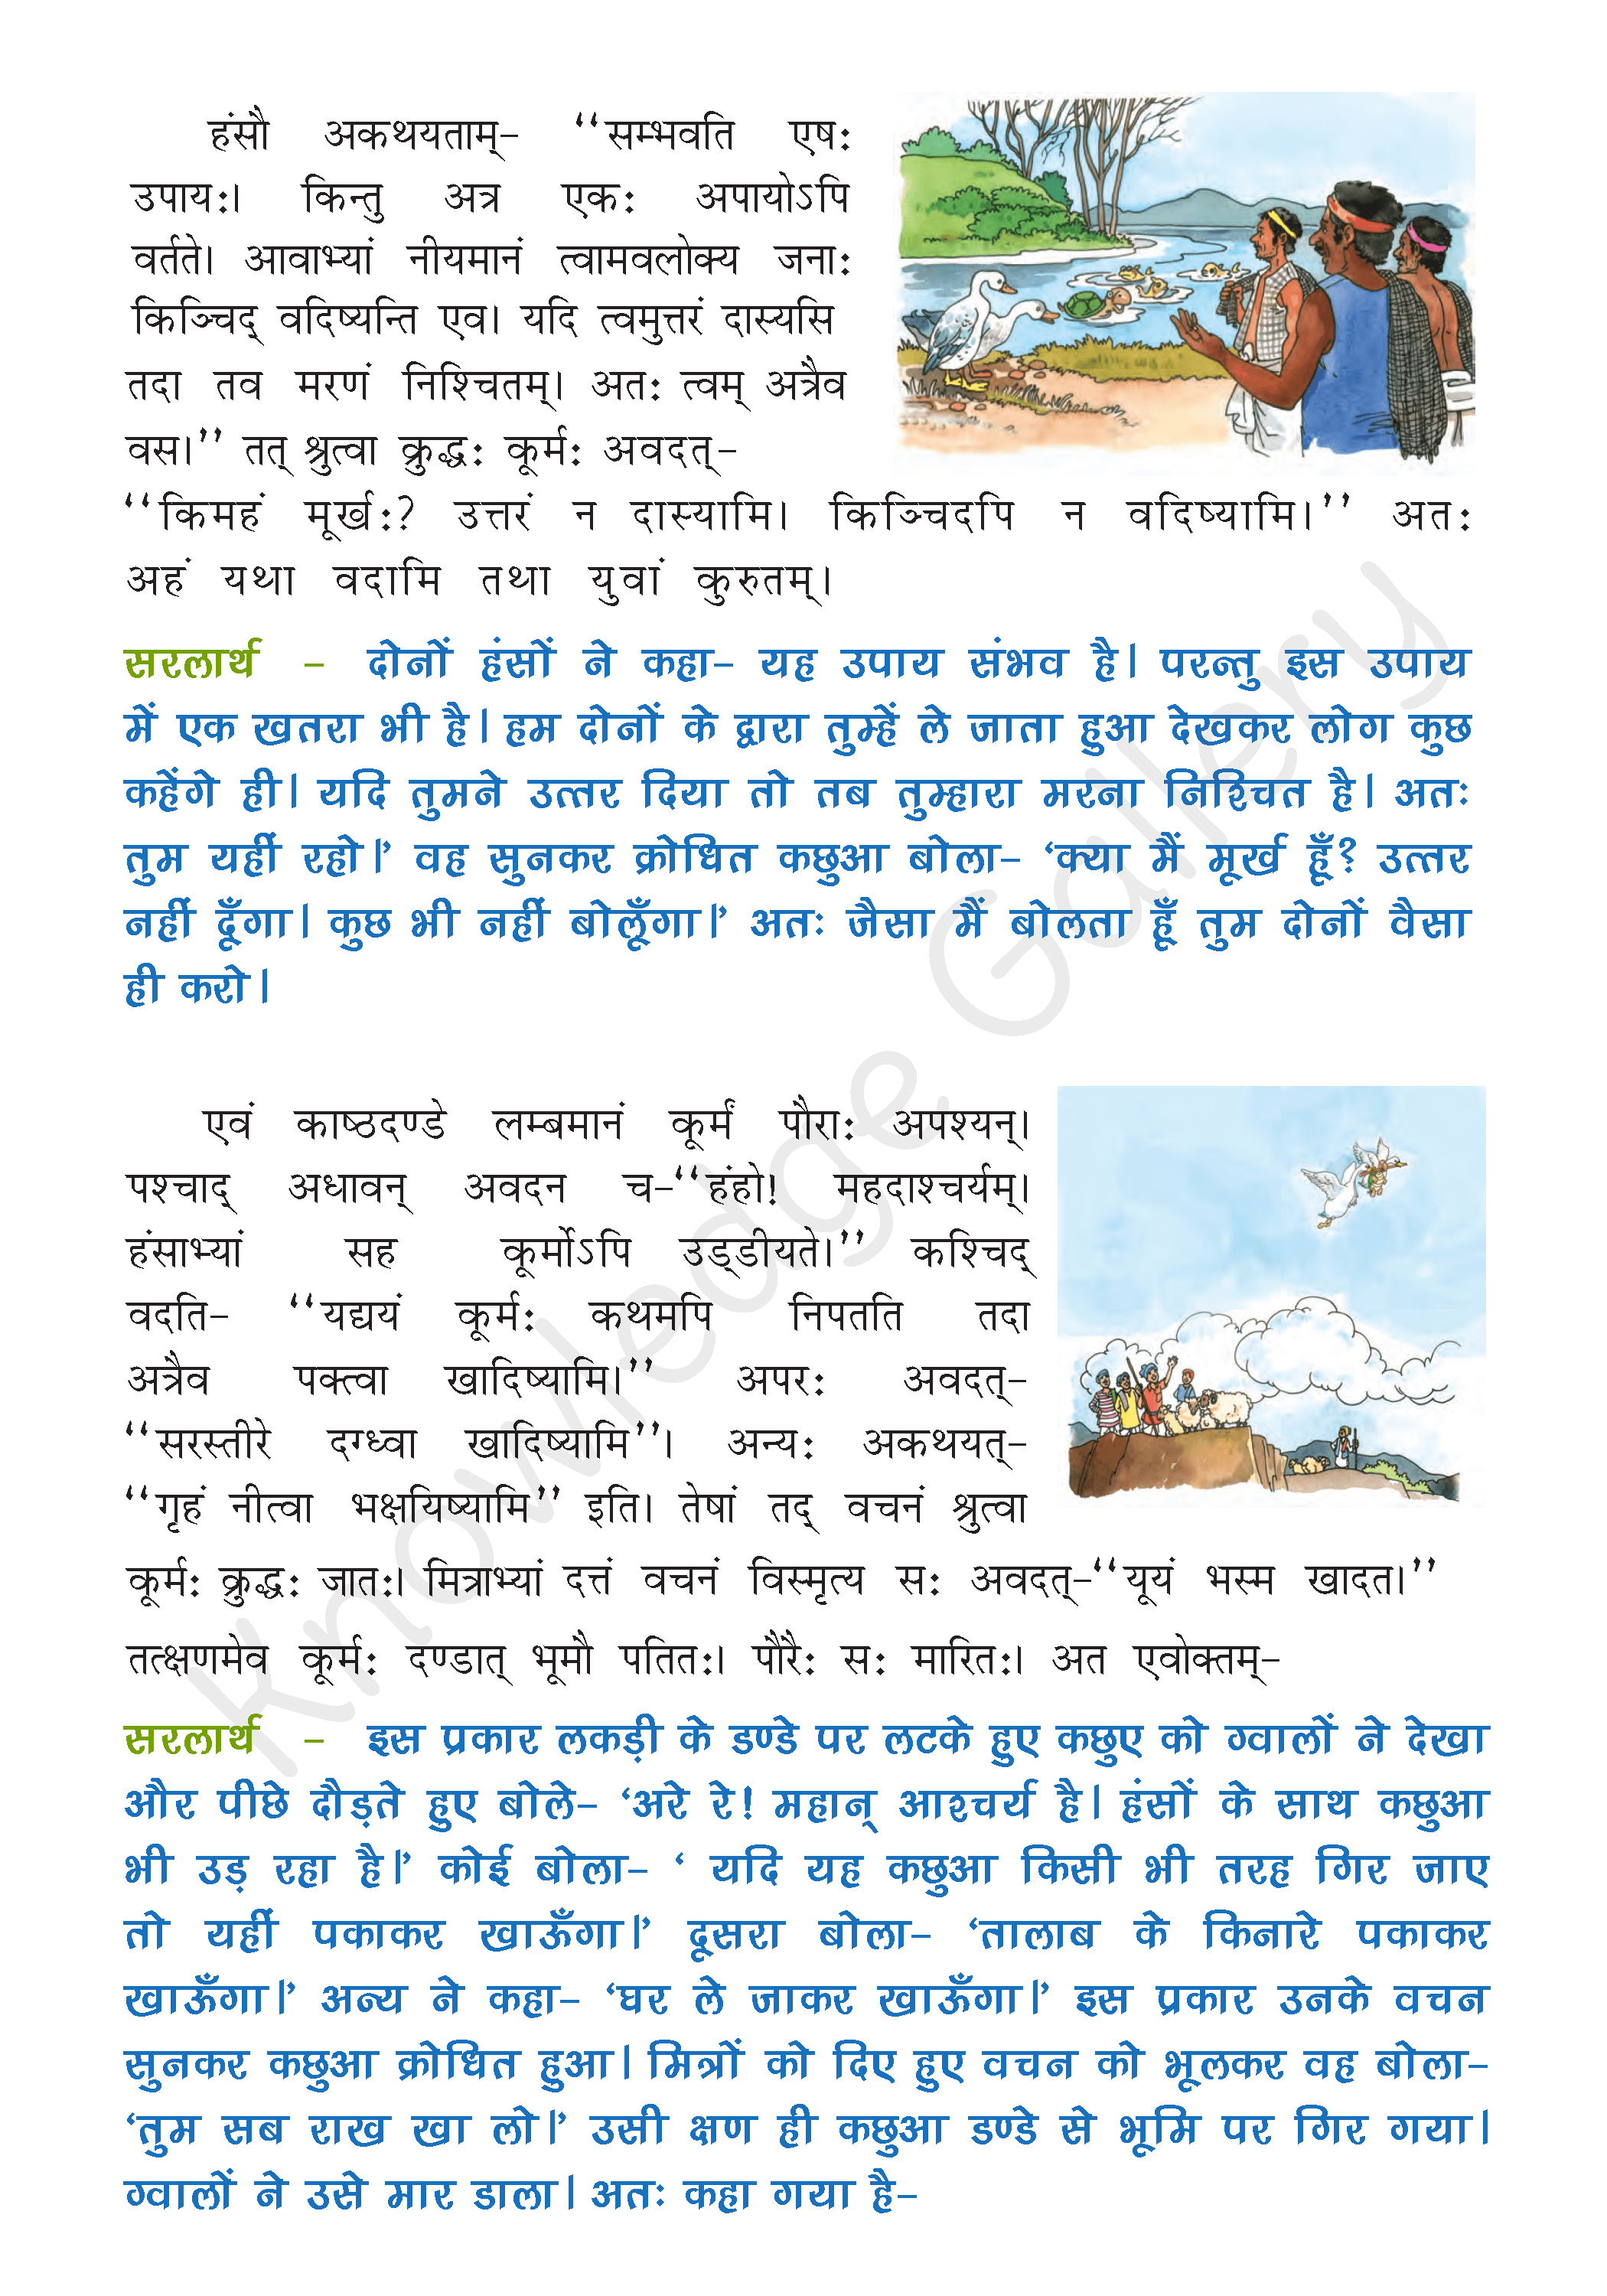 NCERT Solution For Class 7 Sanskrit Chapter 2 part 2